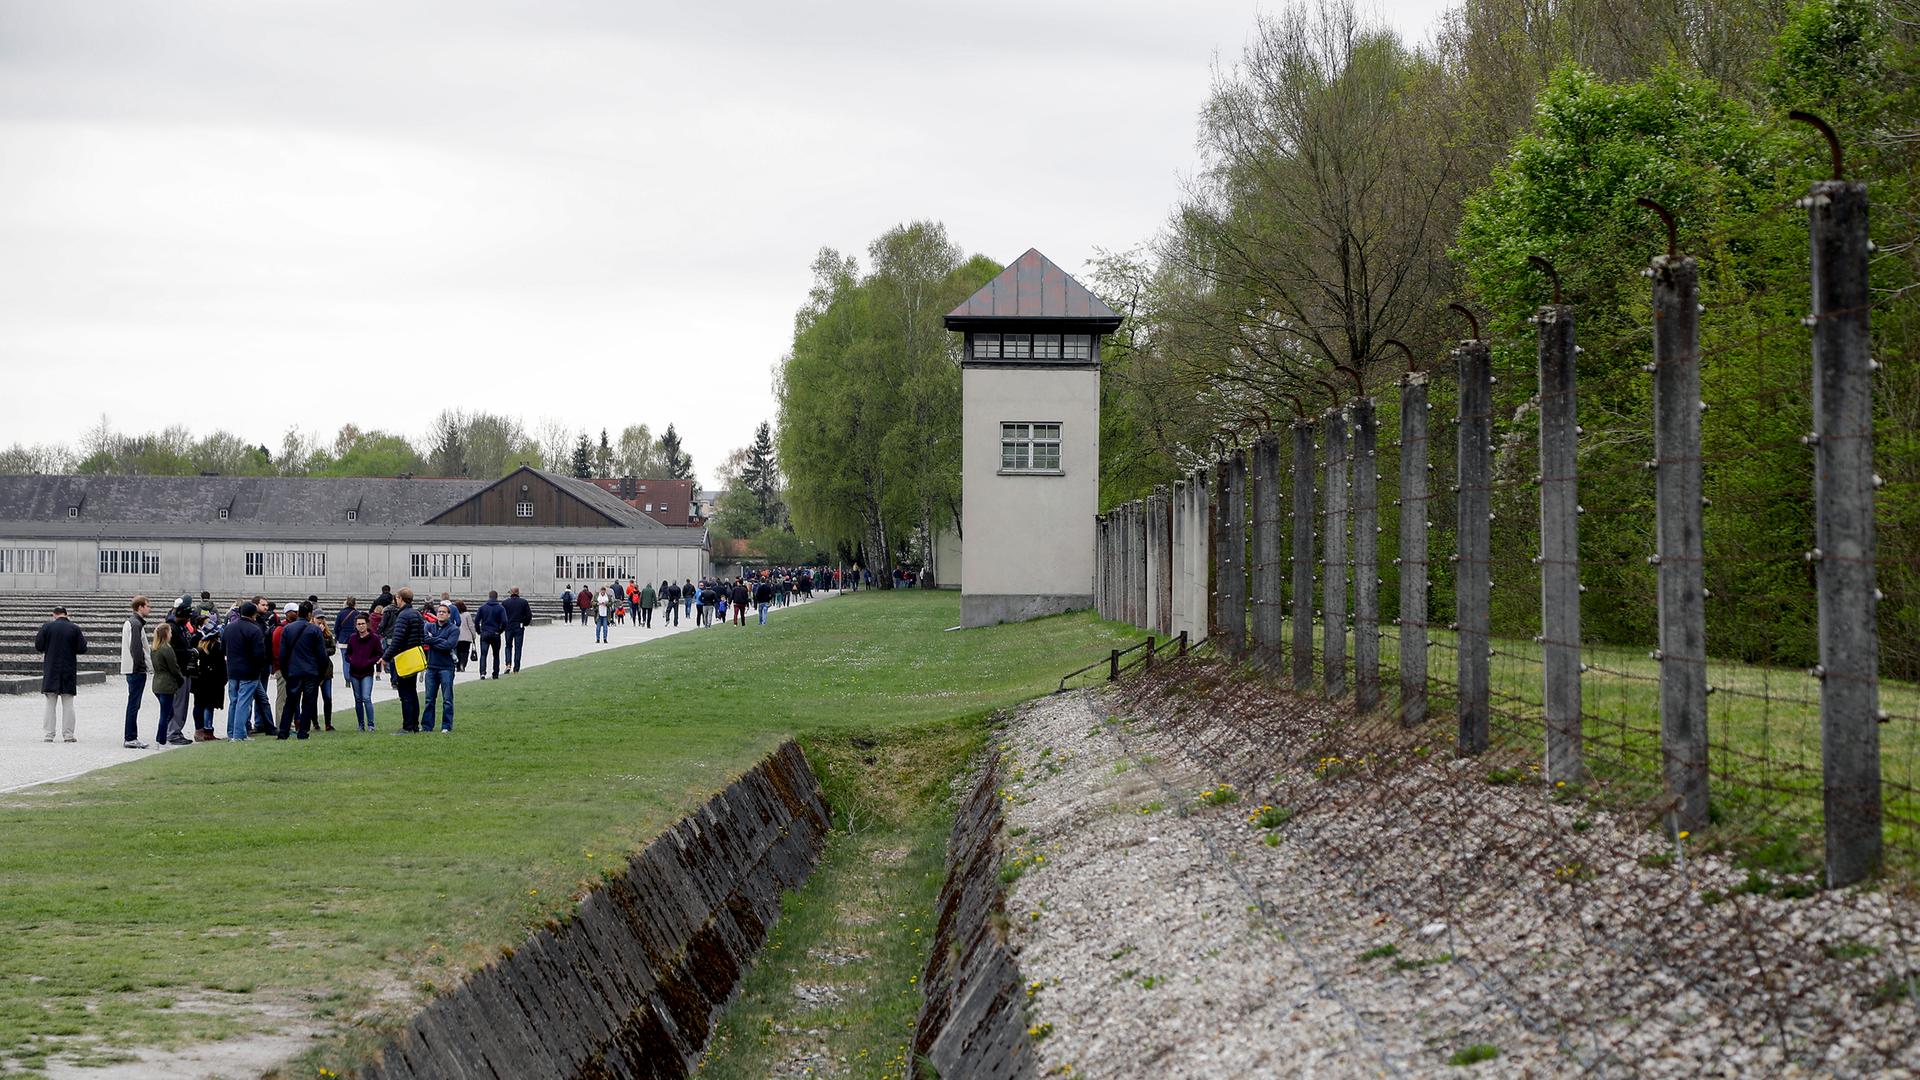 Blick auf den Wachturm des ehemaligen Konzentrationslagers Dachau mit Besuchern, die sich entlag des Gehweges verteilen.